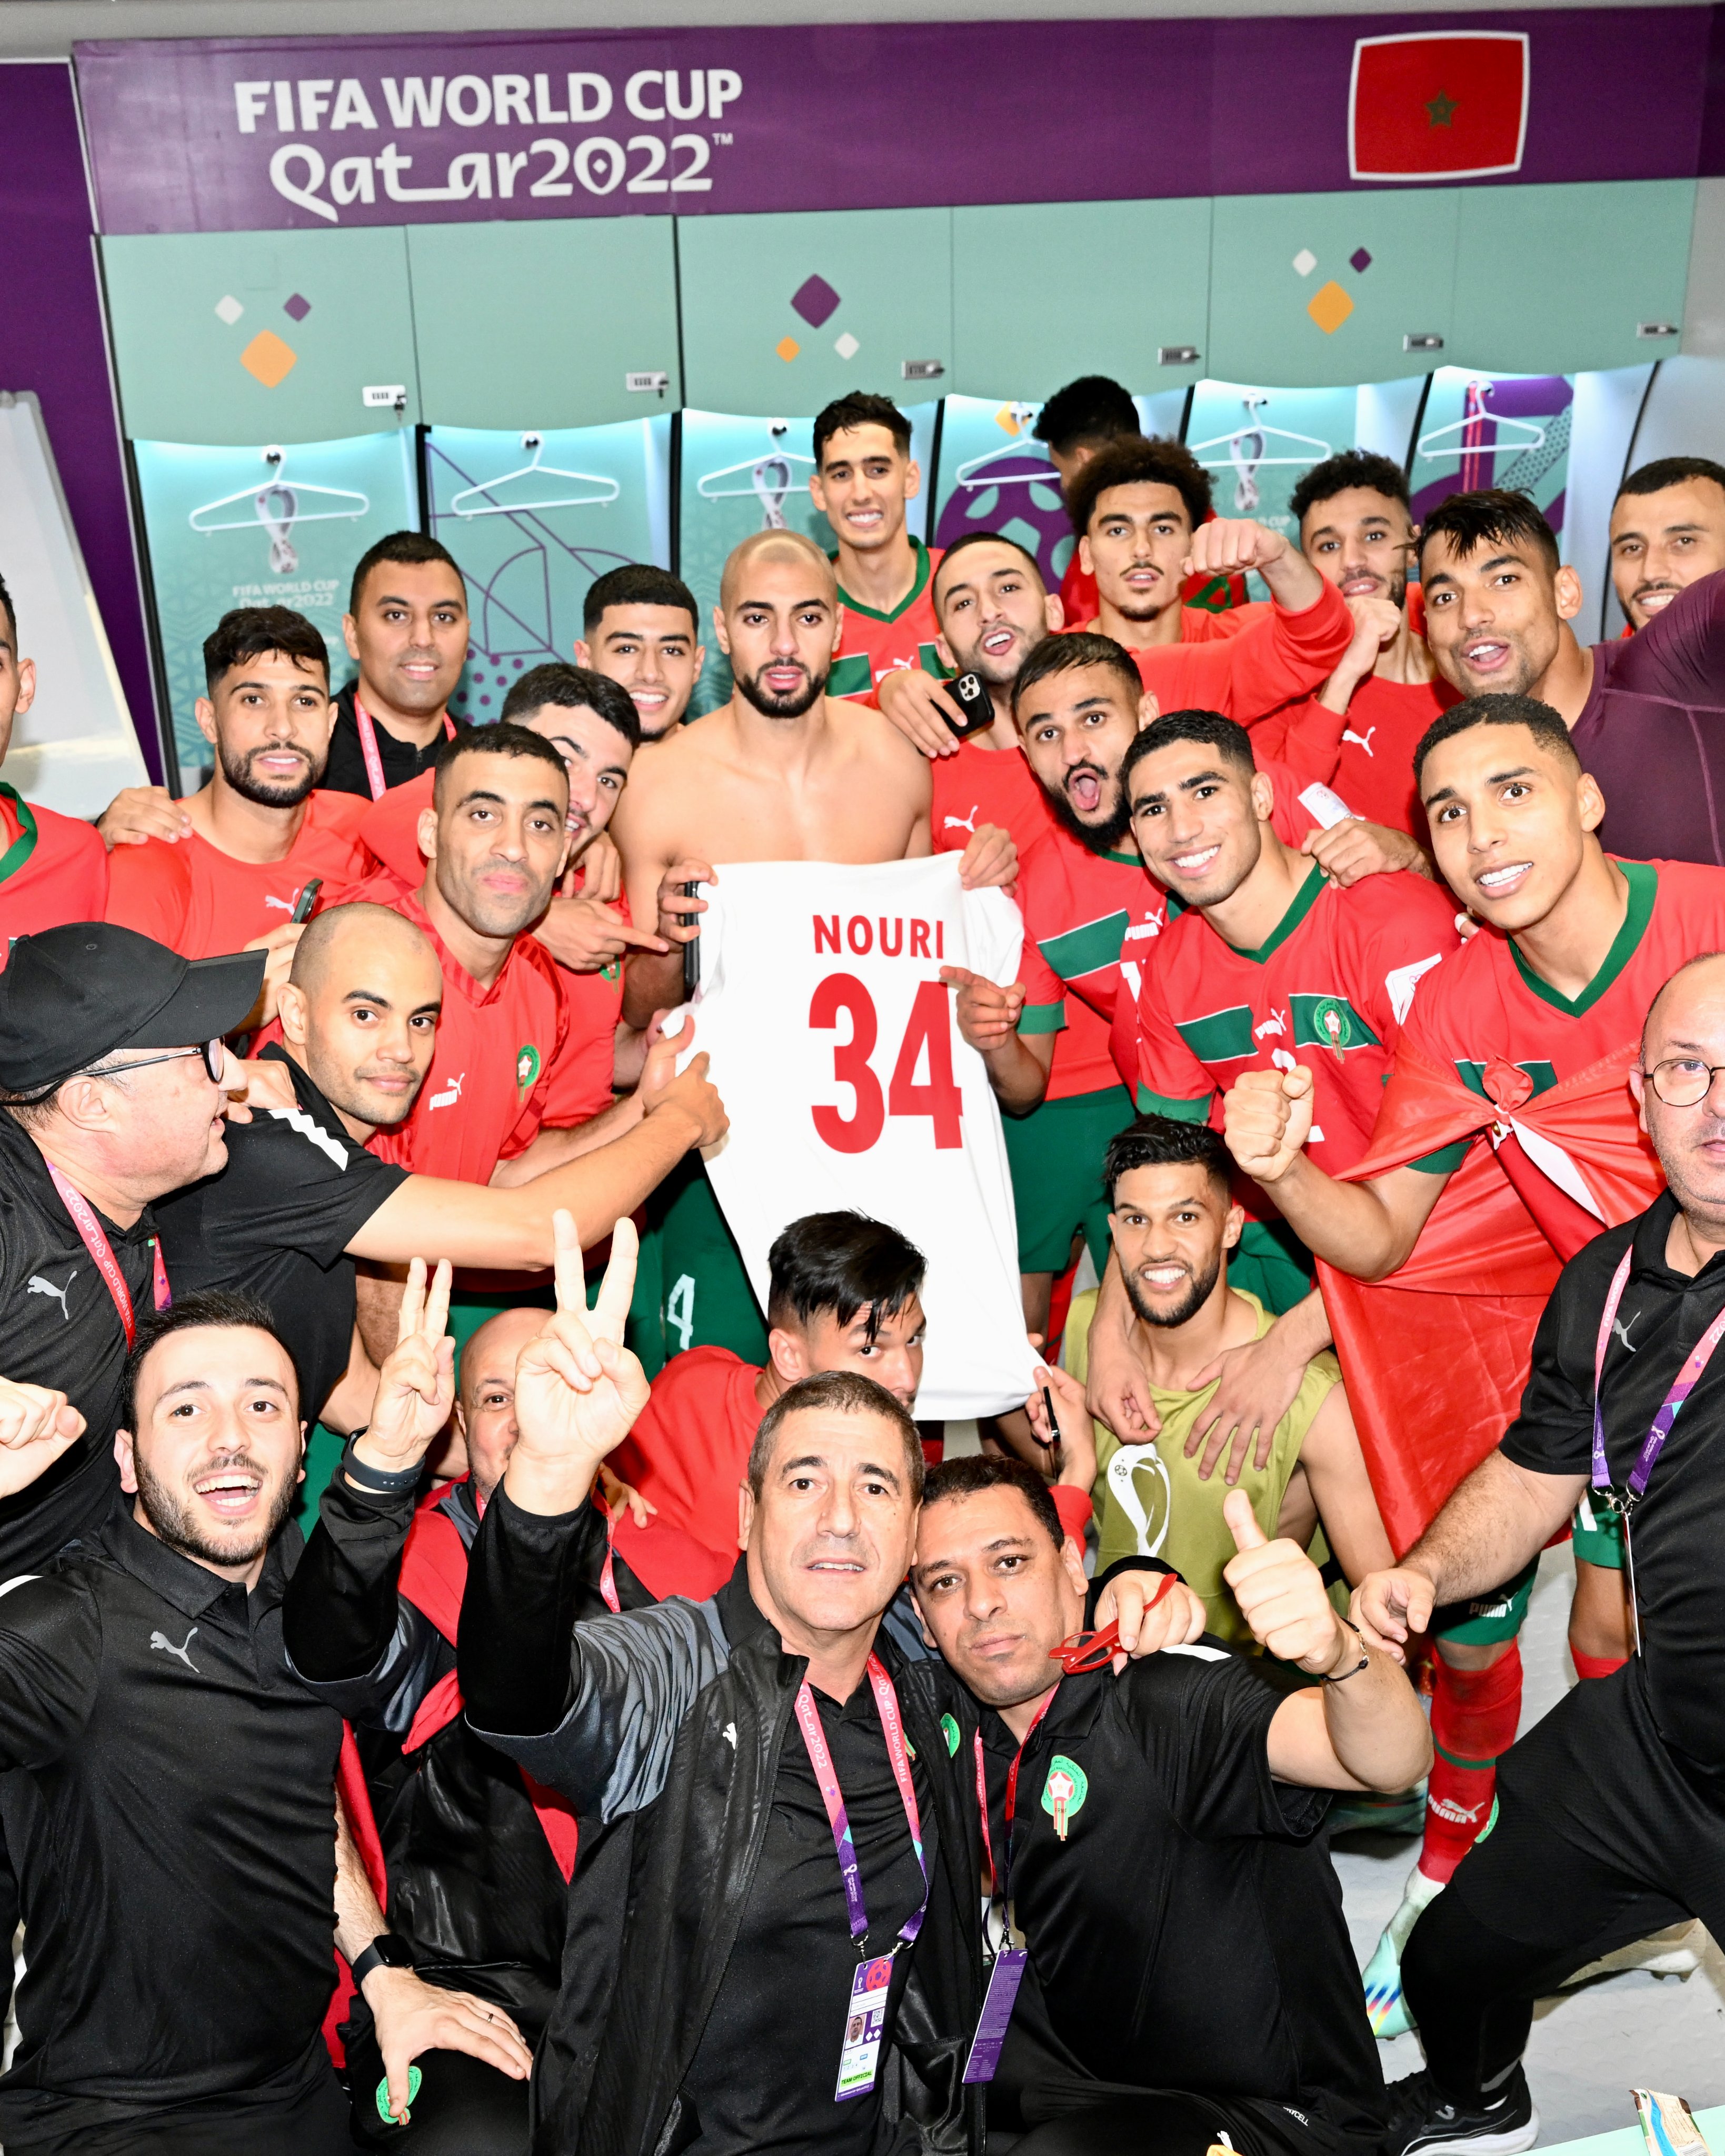 这就是足球❤️！摩洛哥球员们在更衣室举起努里球衣，高喊努里